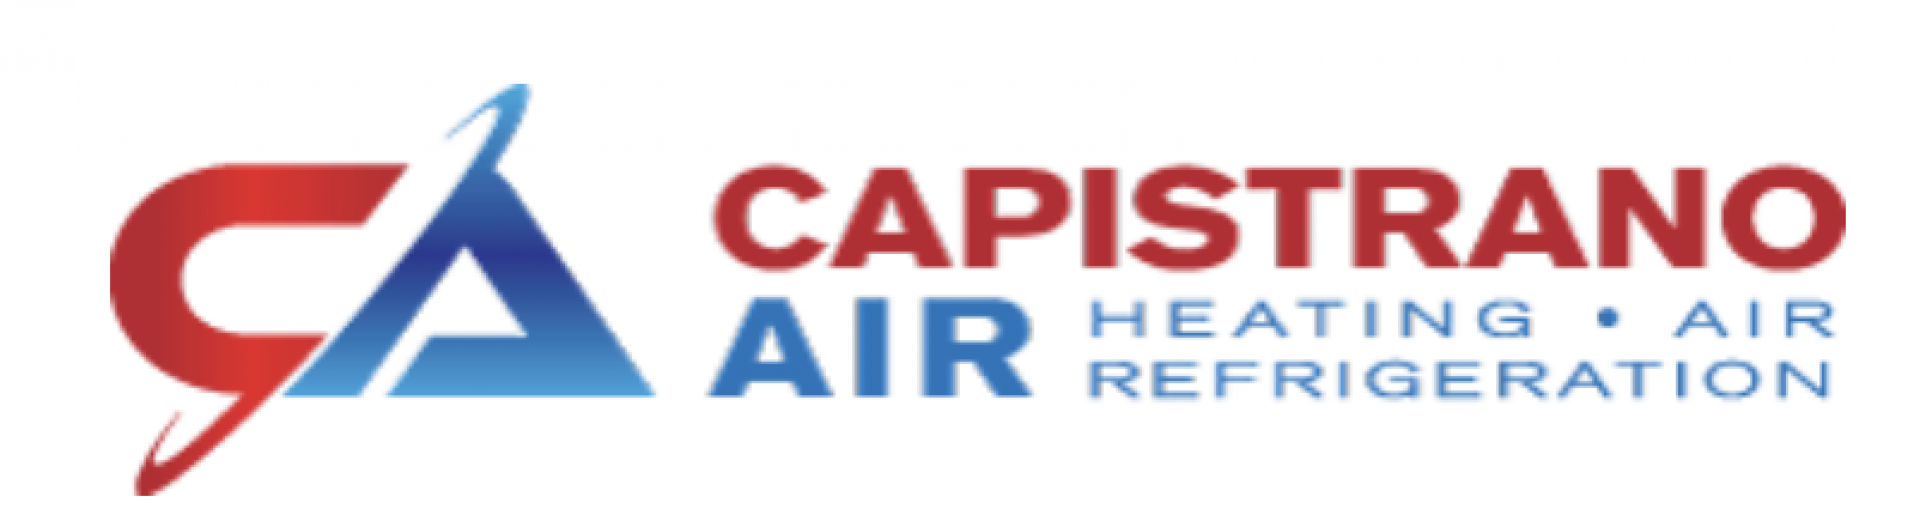 Capistrano Air company logo